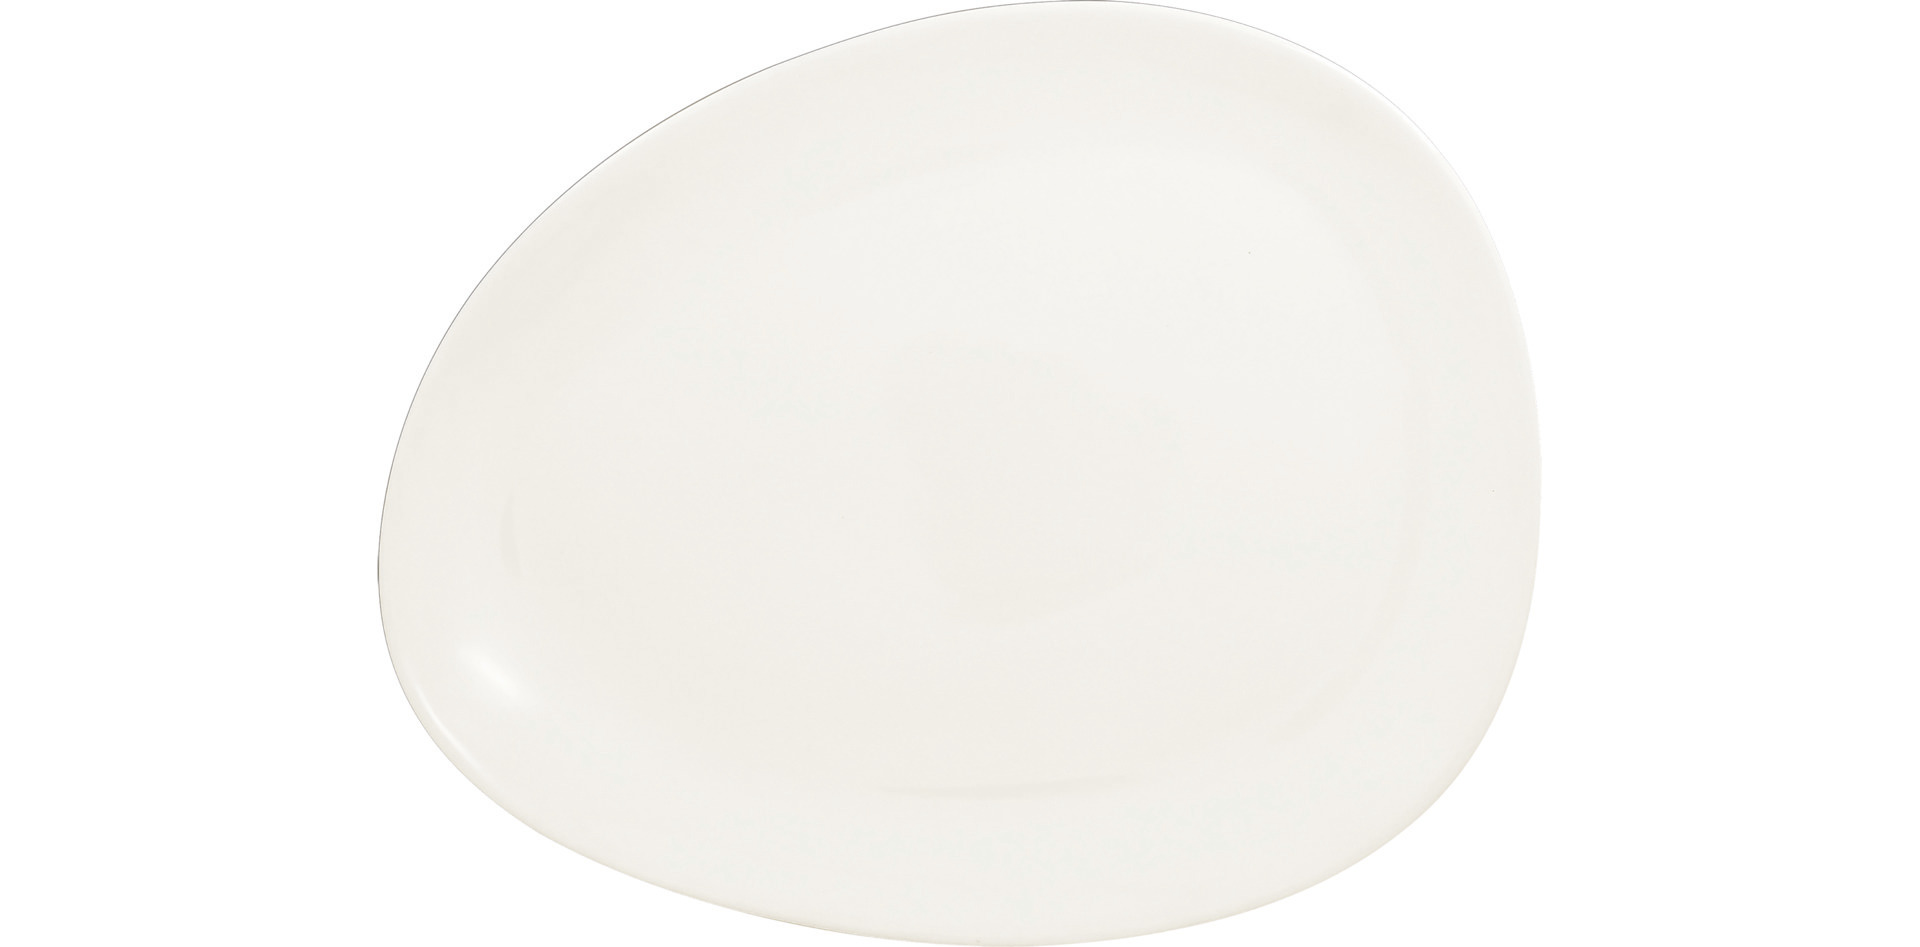 Teller flach shaped 270 x 215 mm plain-white